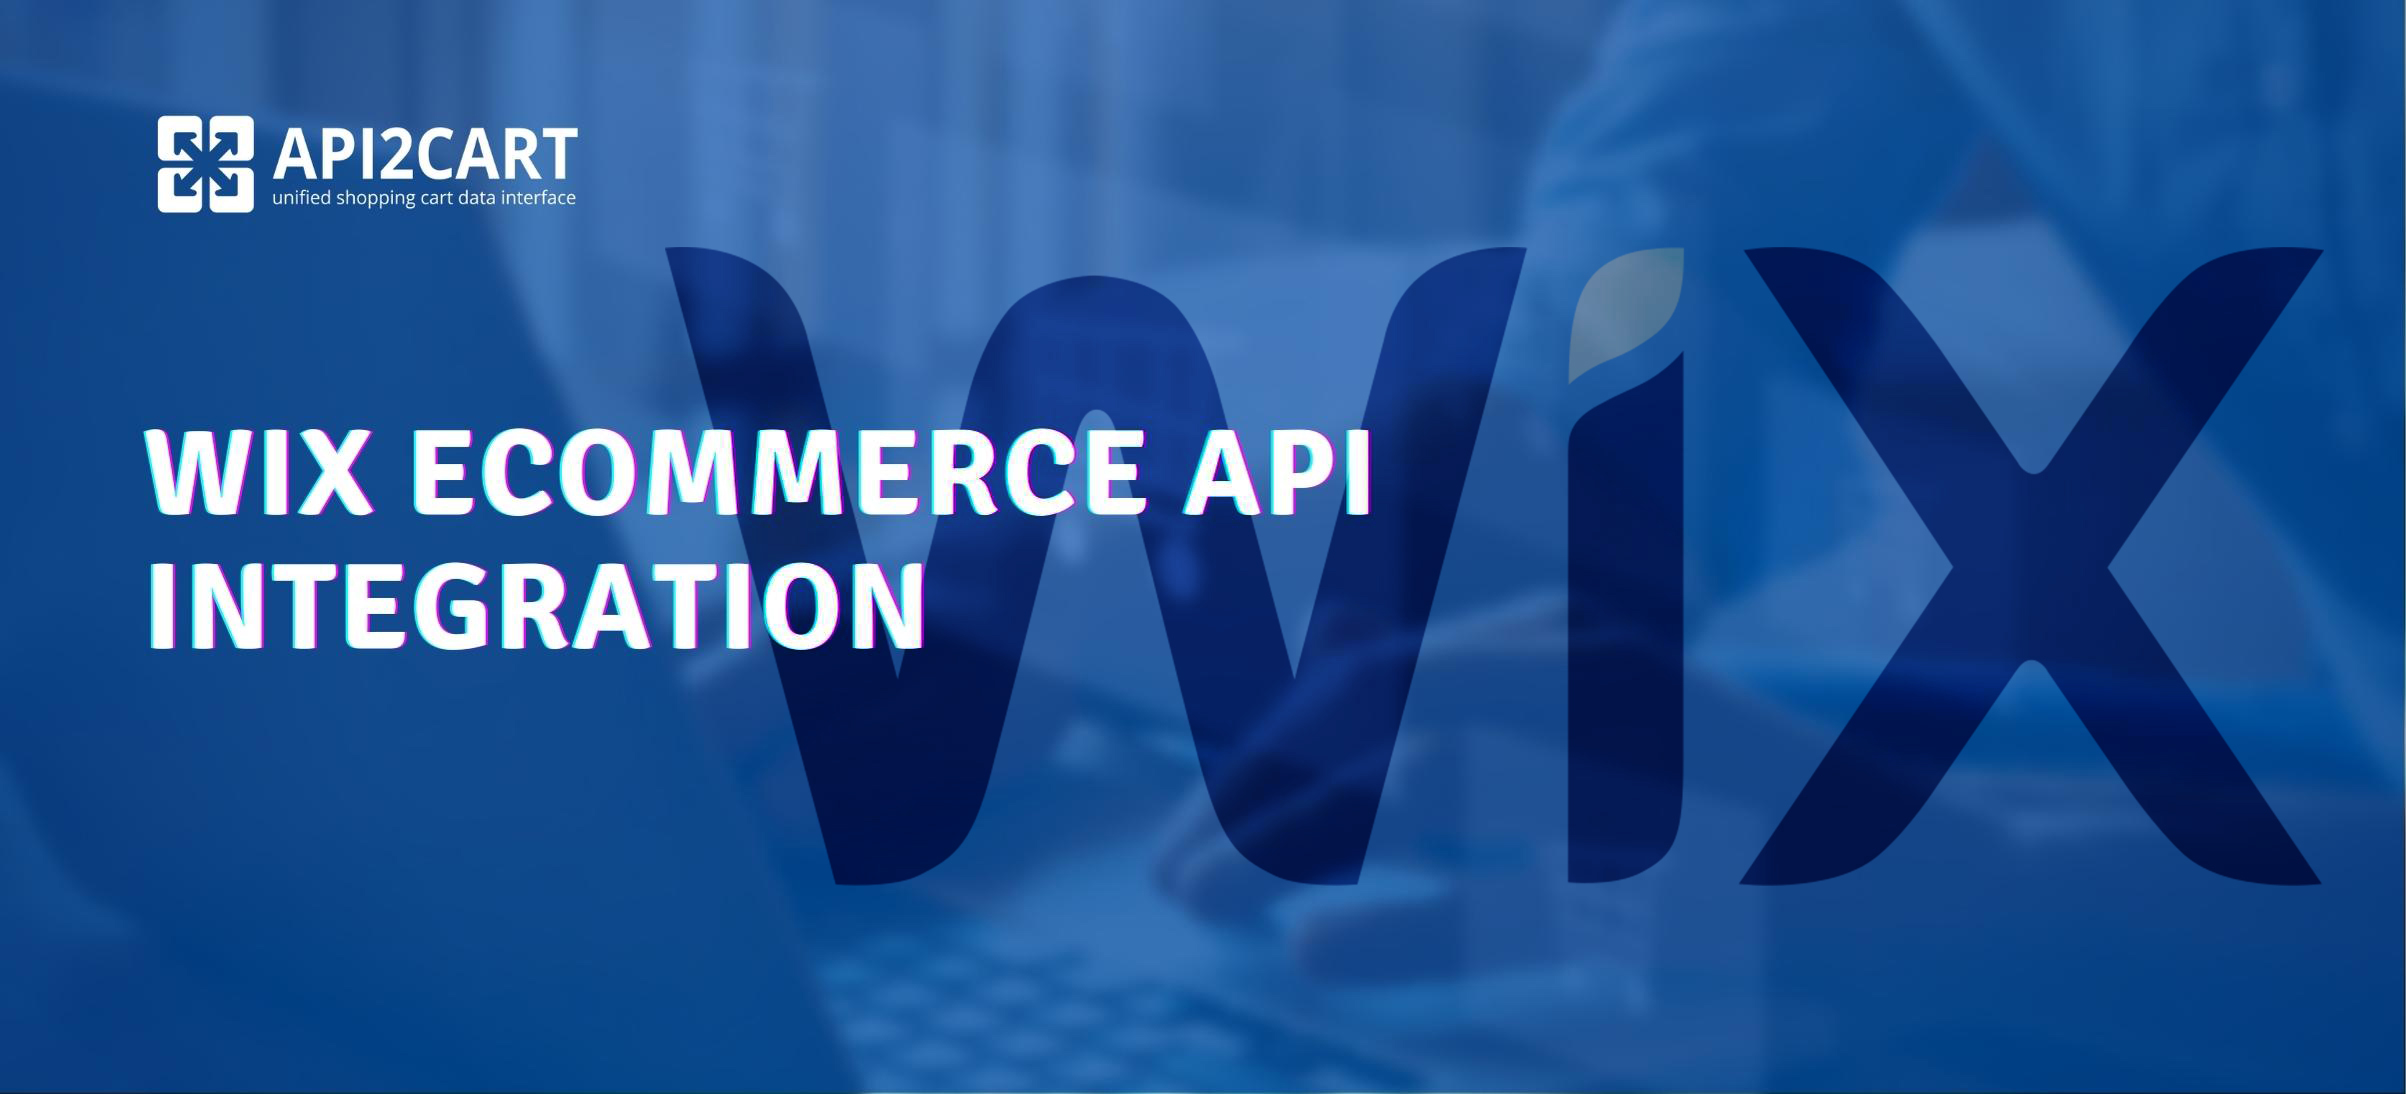 Wix eCommerce API